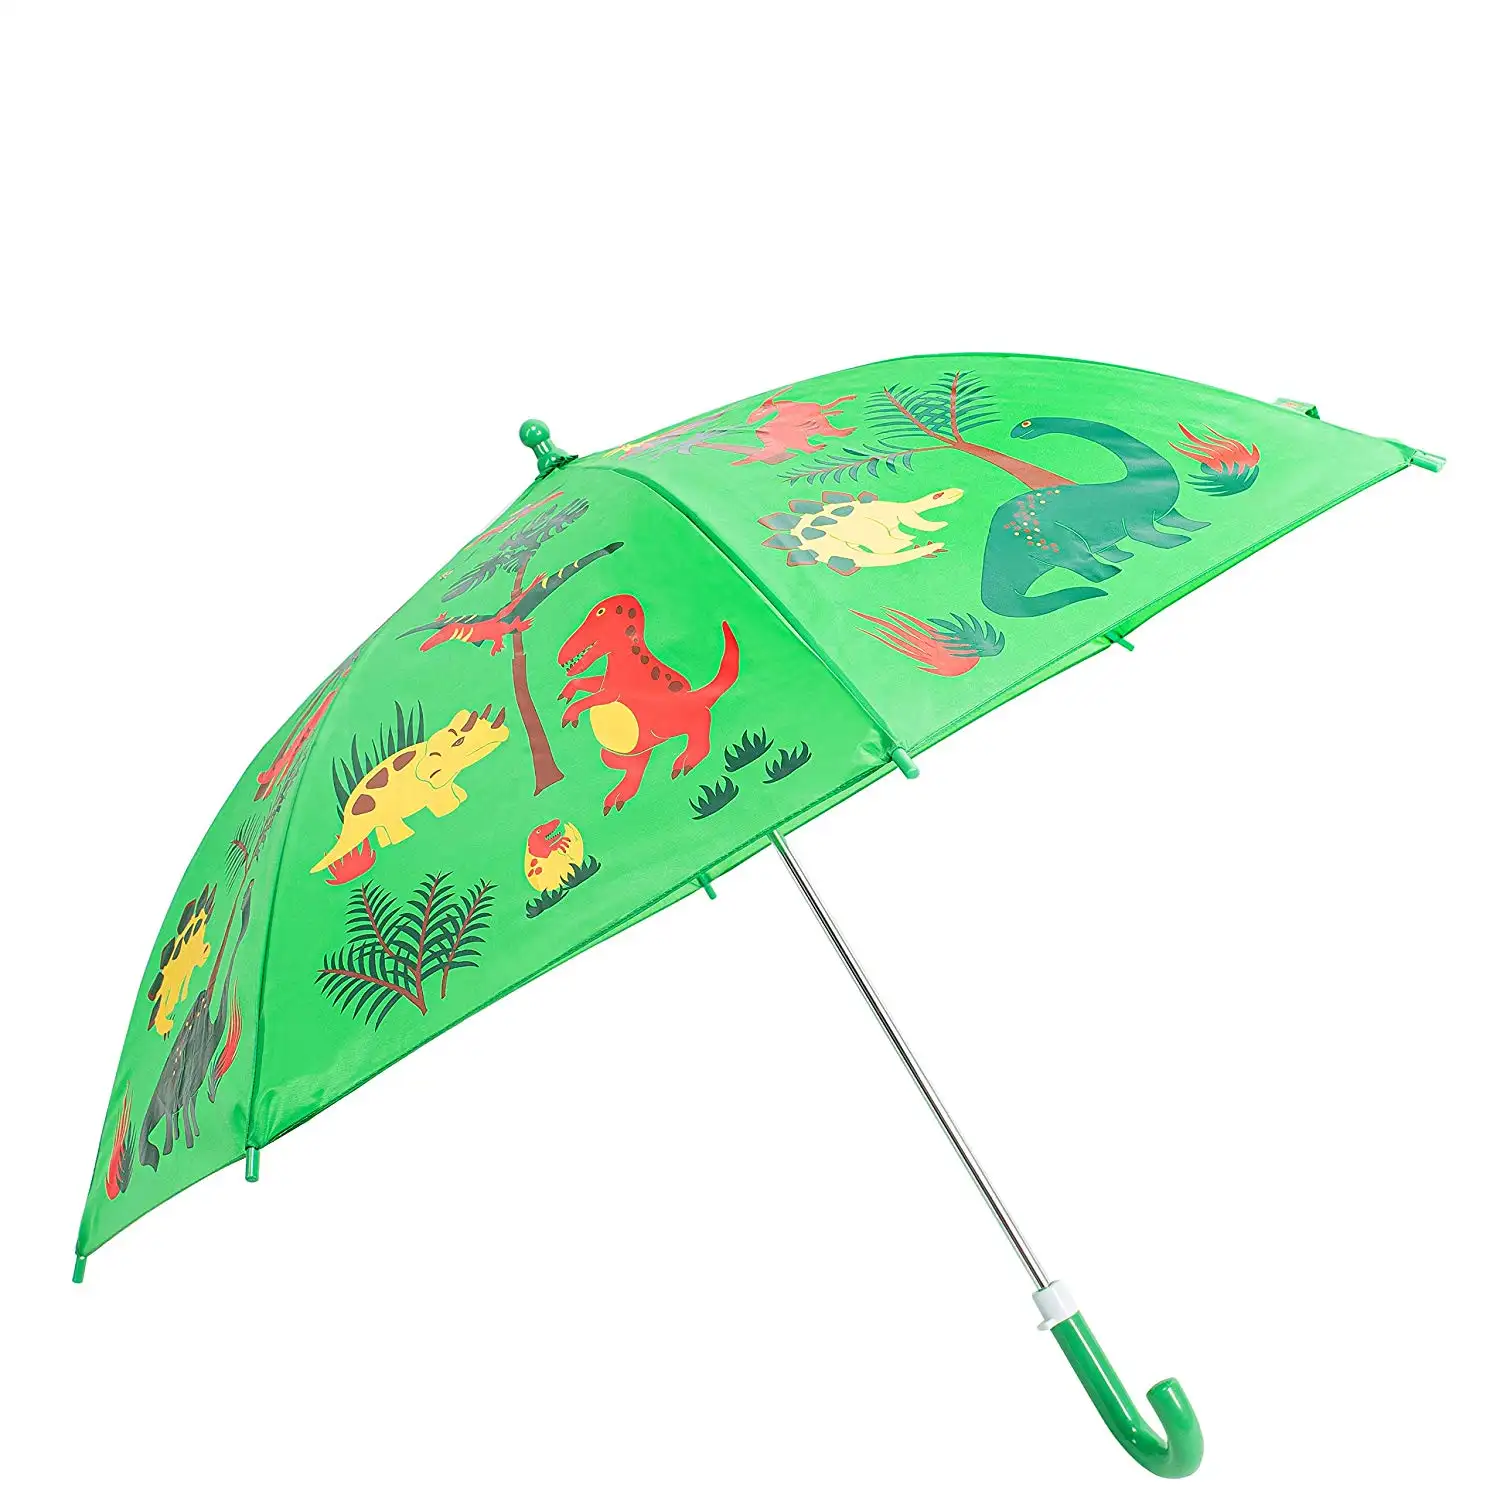 Excellente qualité unique mode enfants dessin animé parapluies